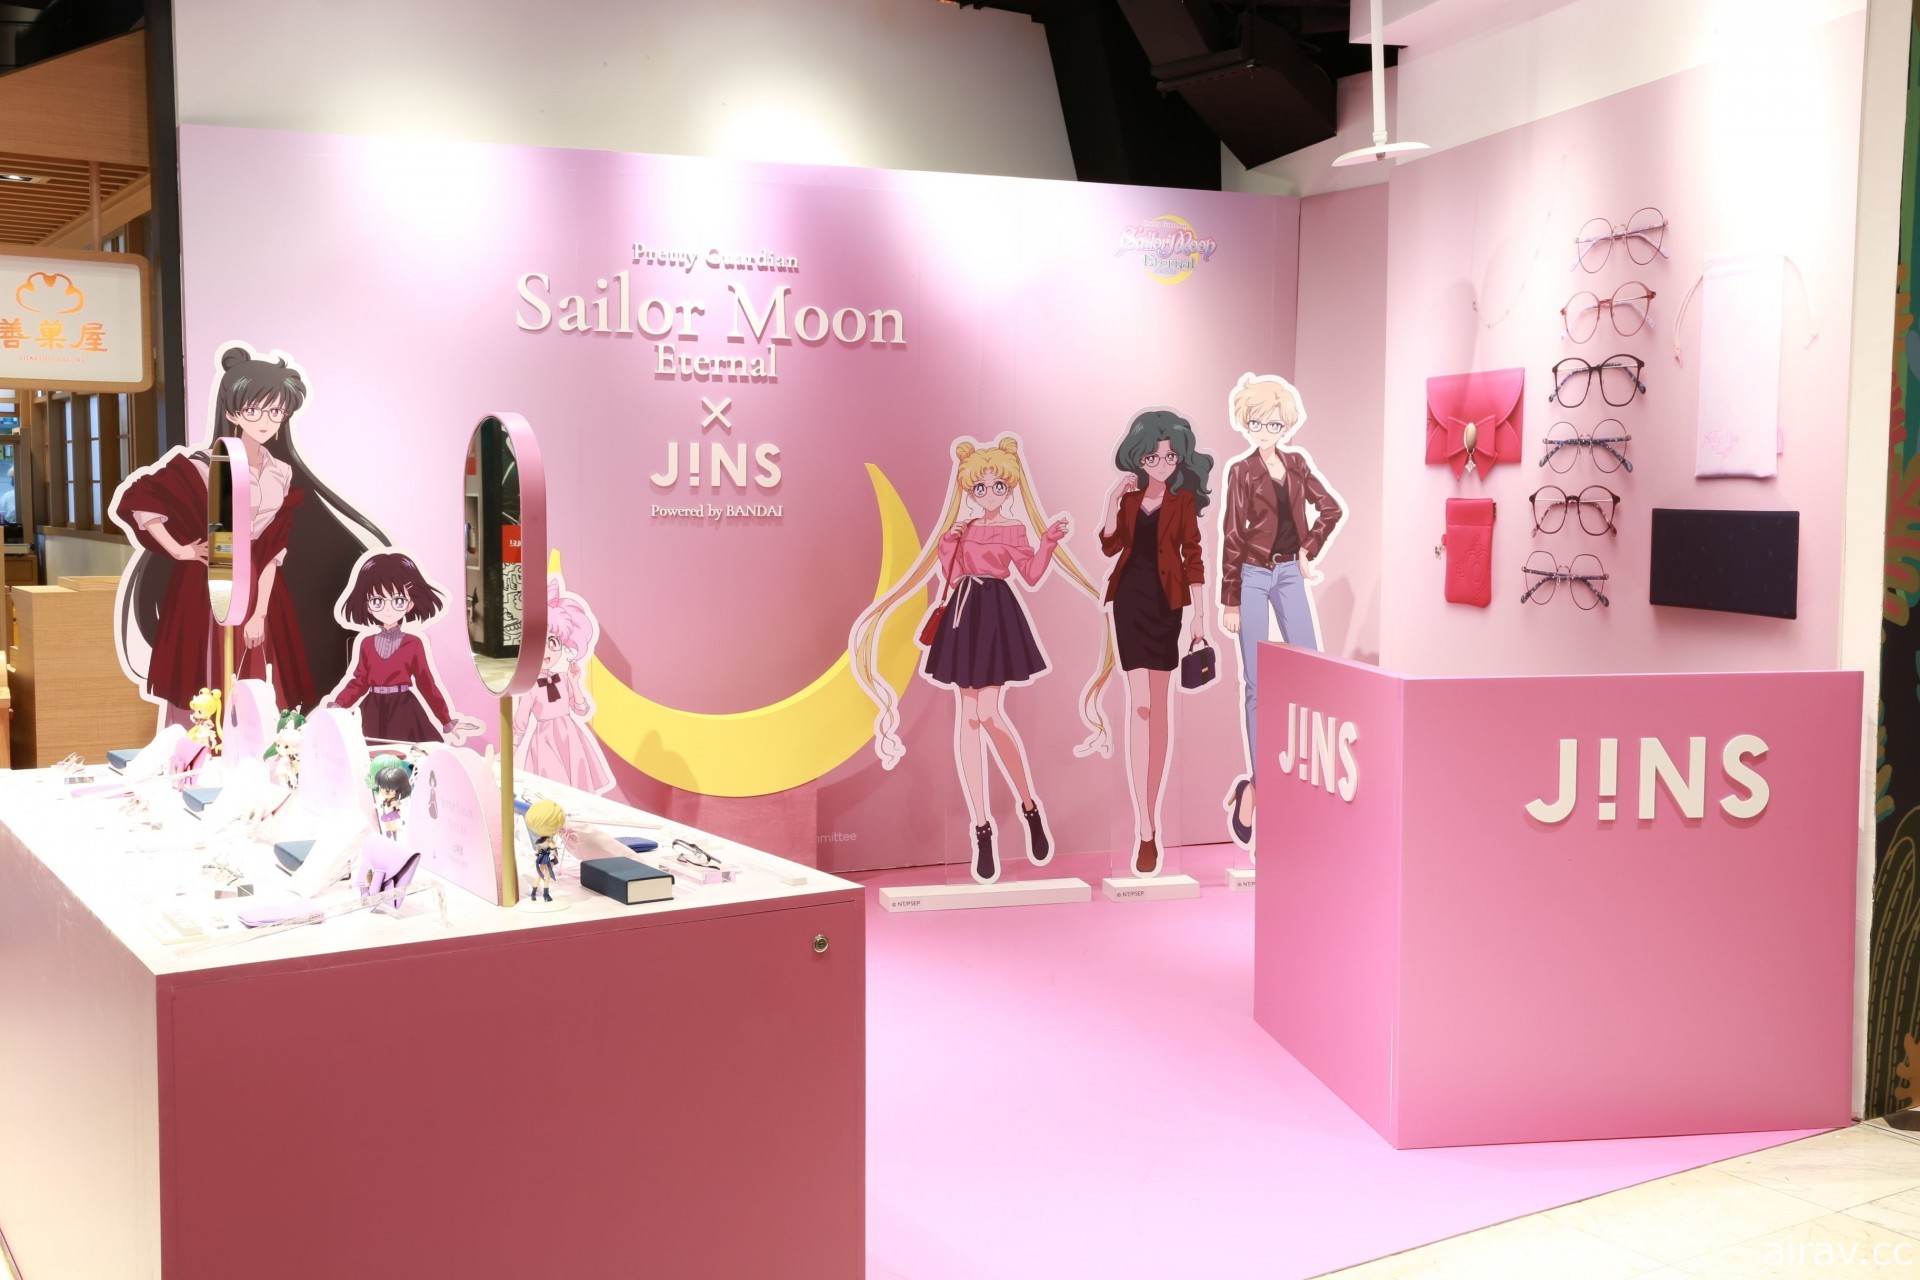 《美少女战士 Sailor Moon Eternal》x JINS 联名眼镜与快闪店在台登场